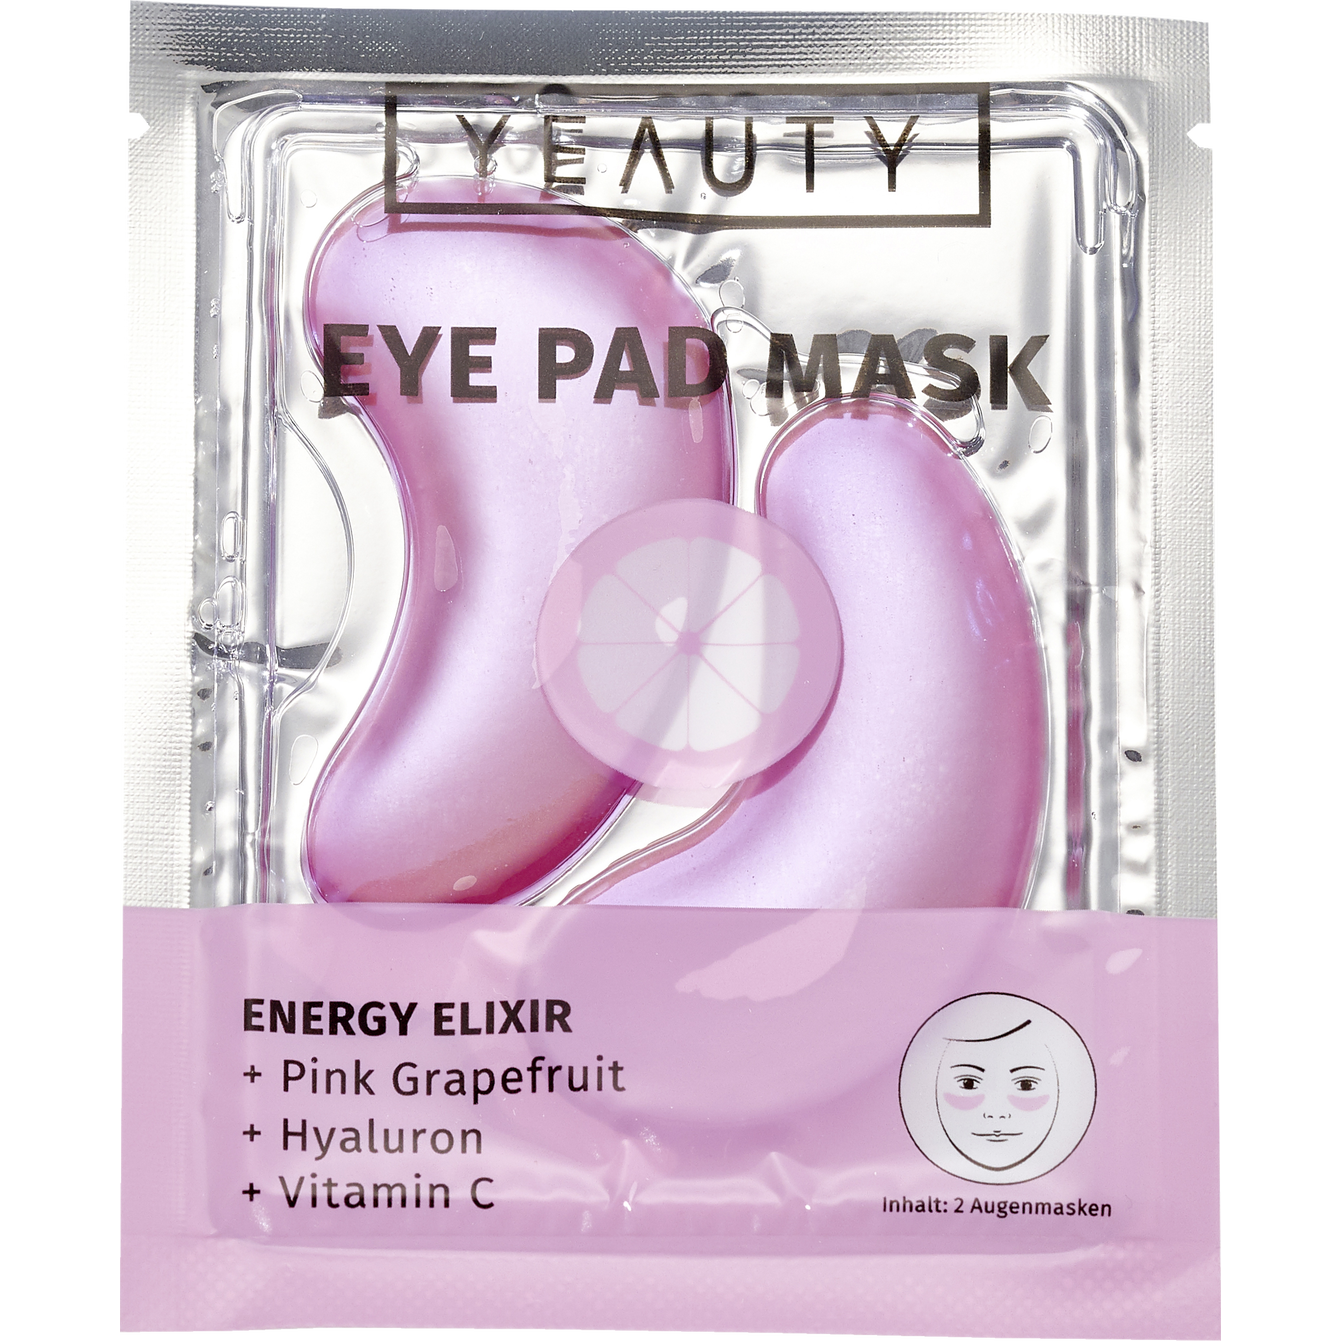 YEAUTY Eye Pad Mask Energy Elixir
2 pieces